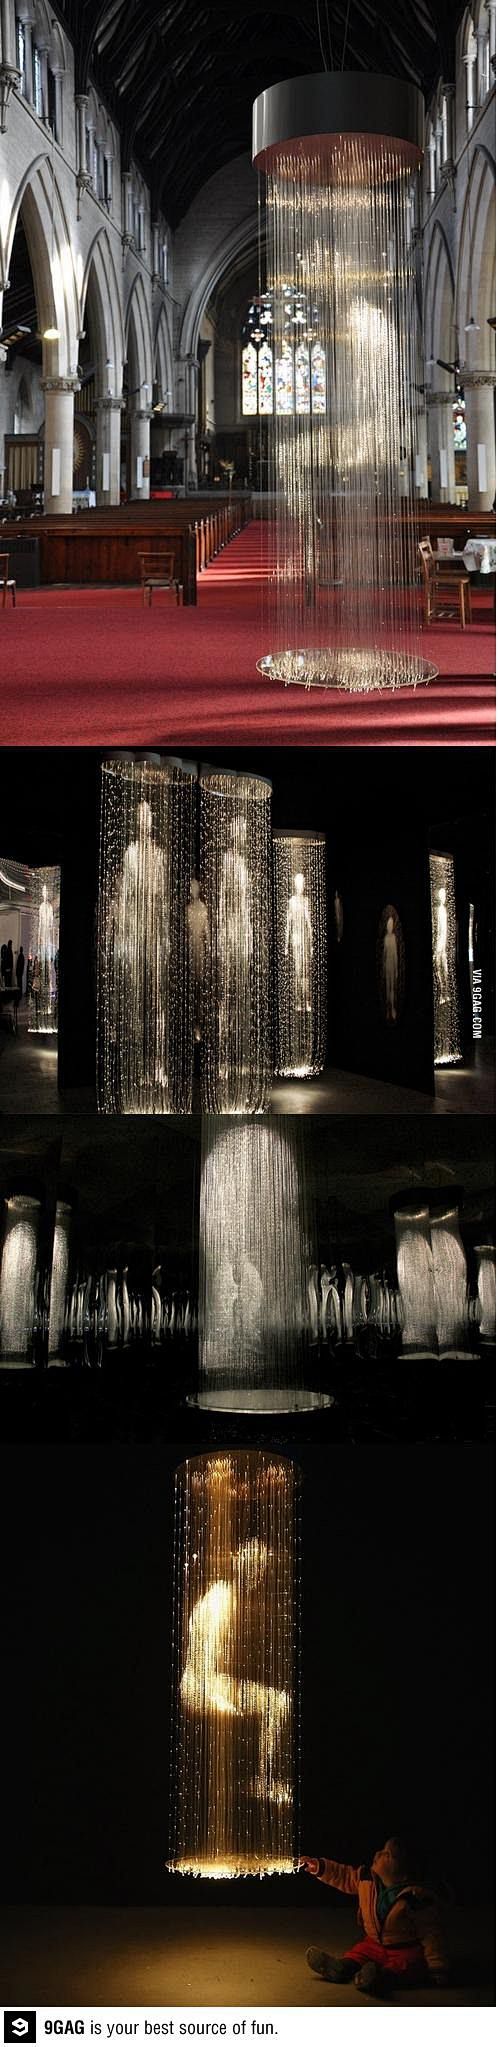 light sculptures: 